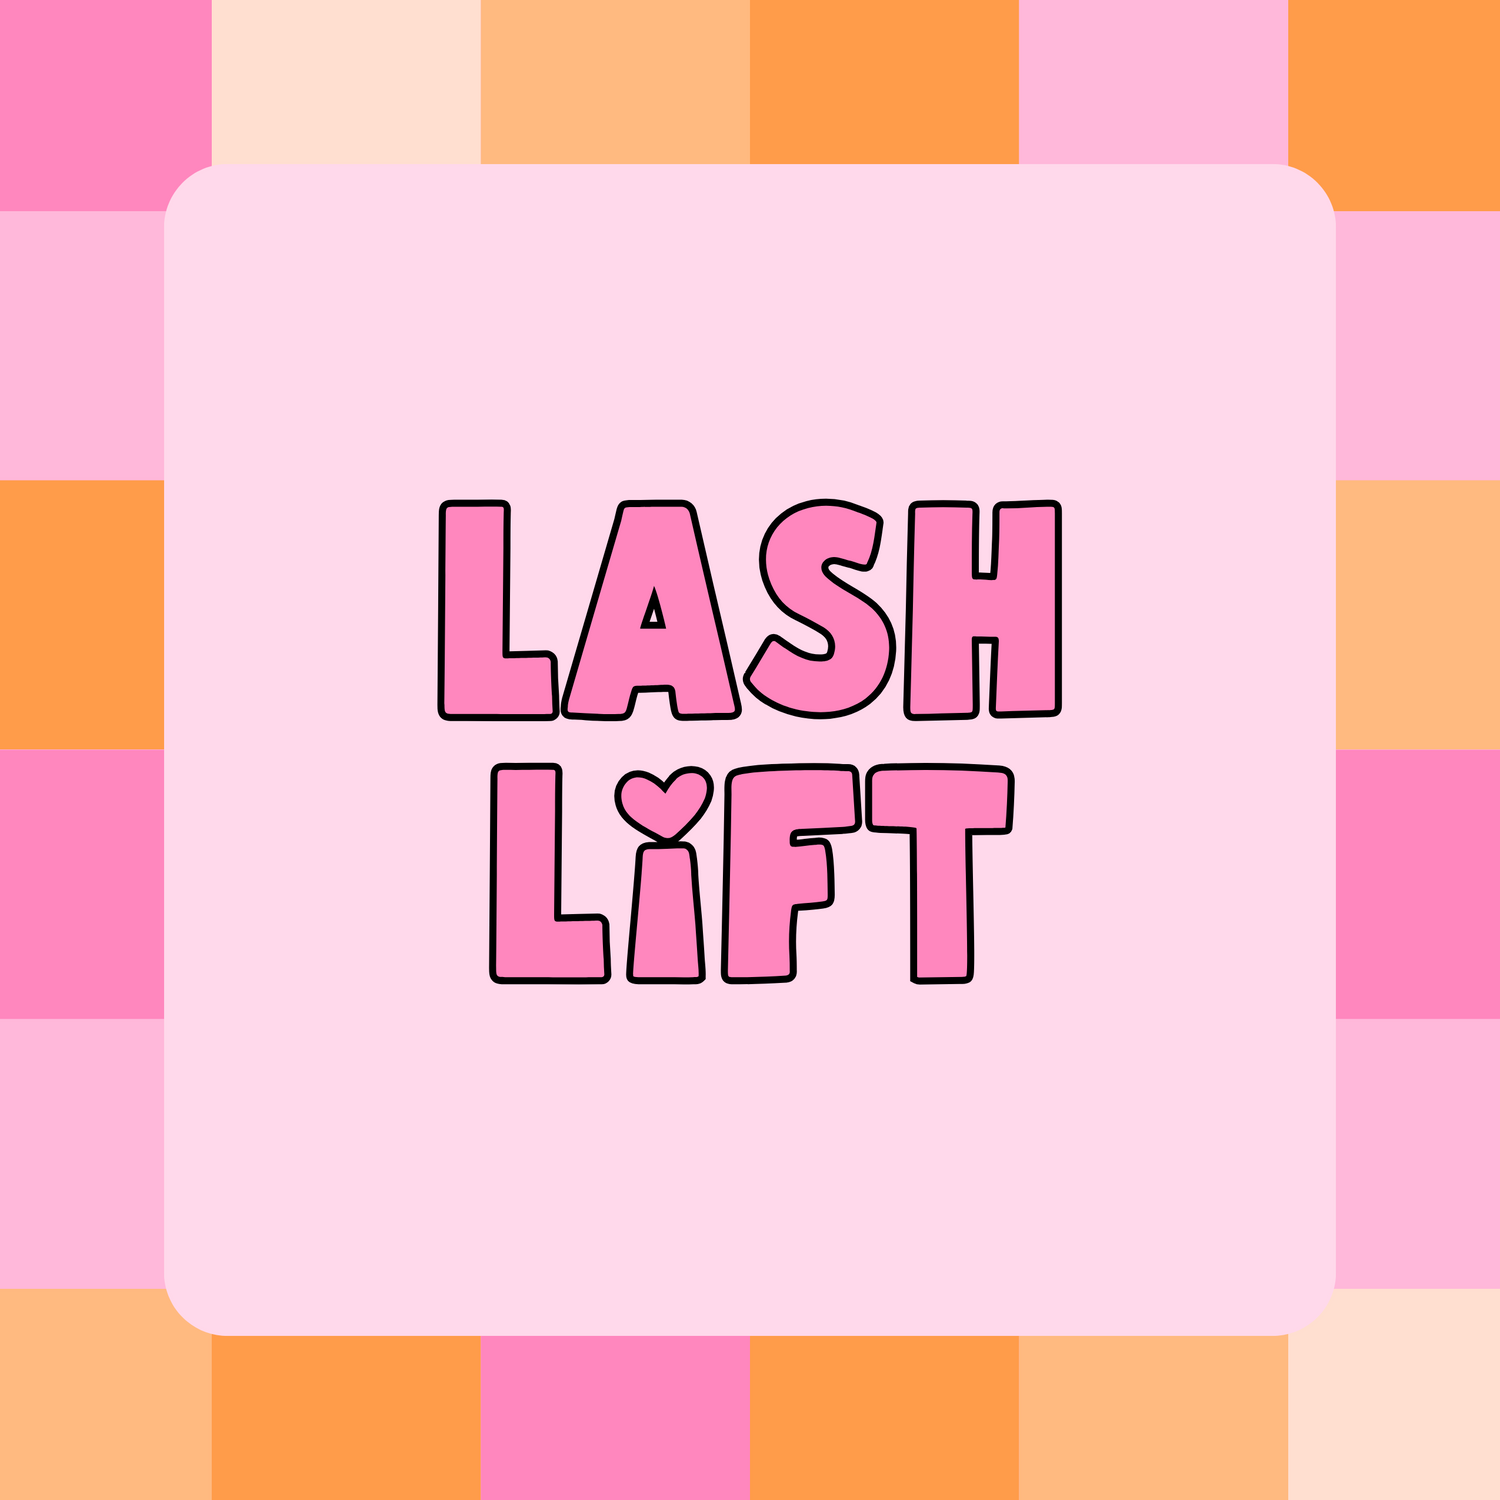 LASH LIFT